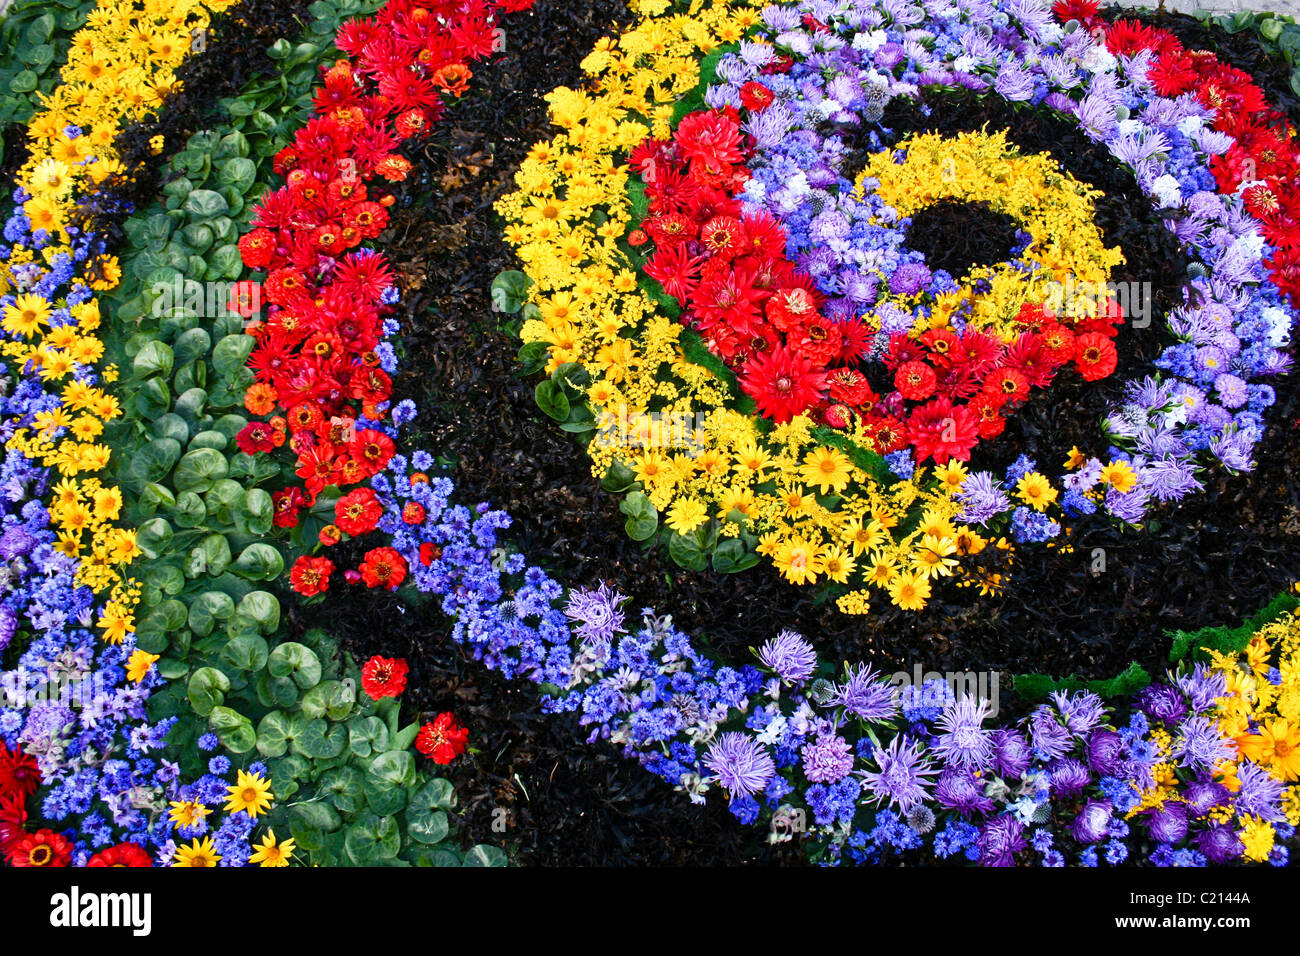 Flower carpet Stock Photo